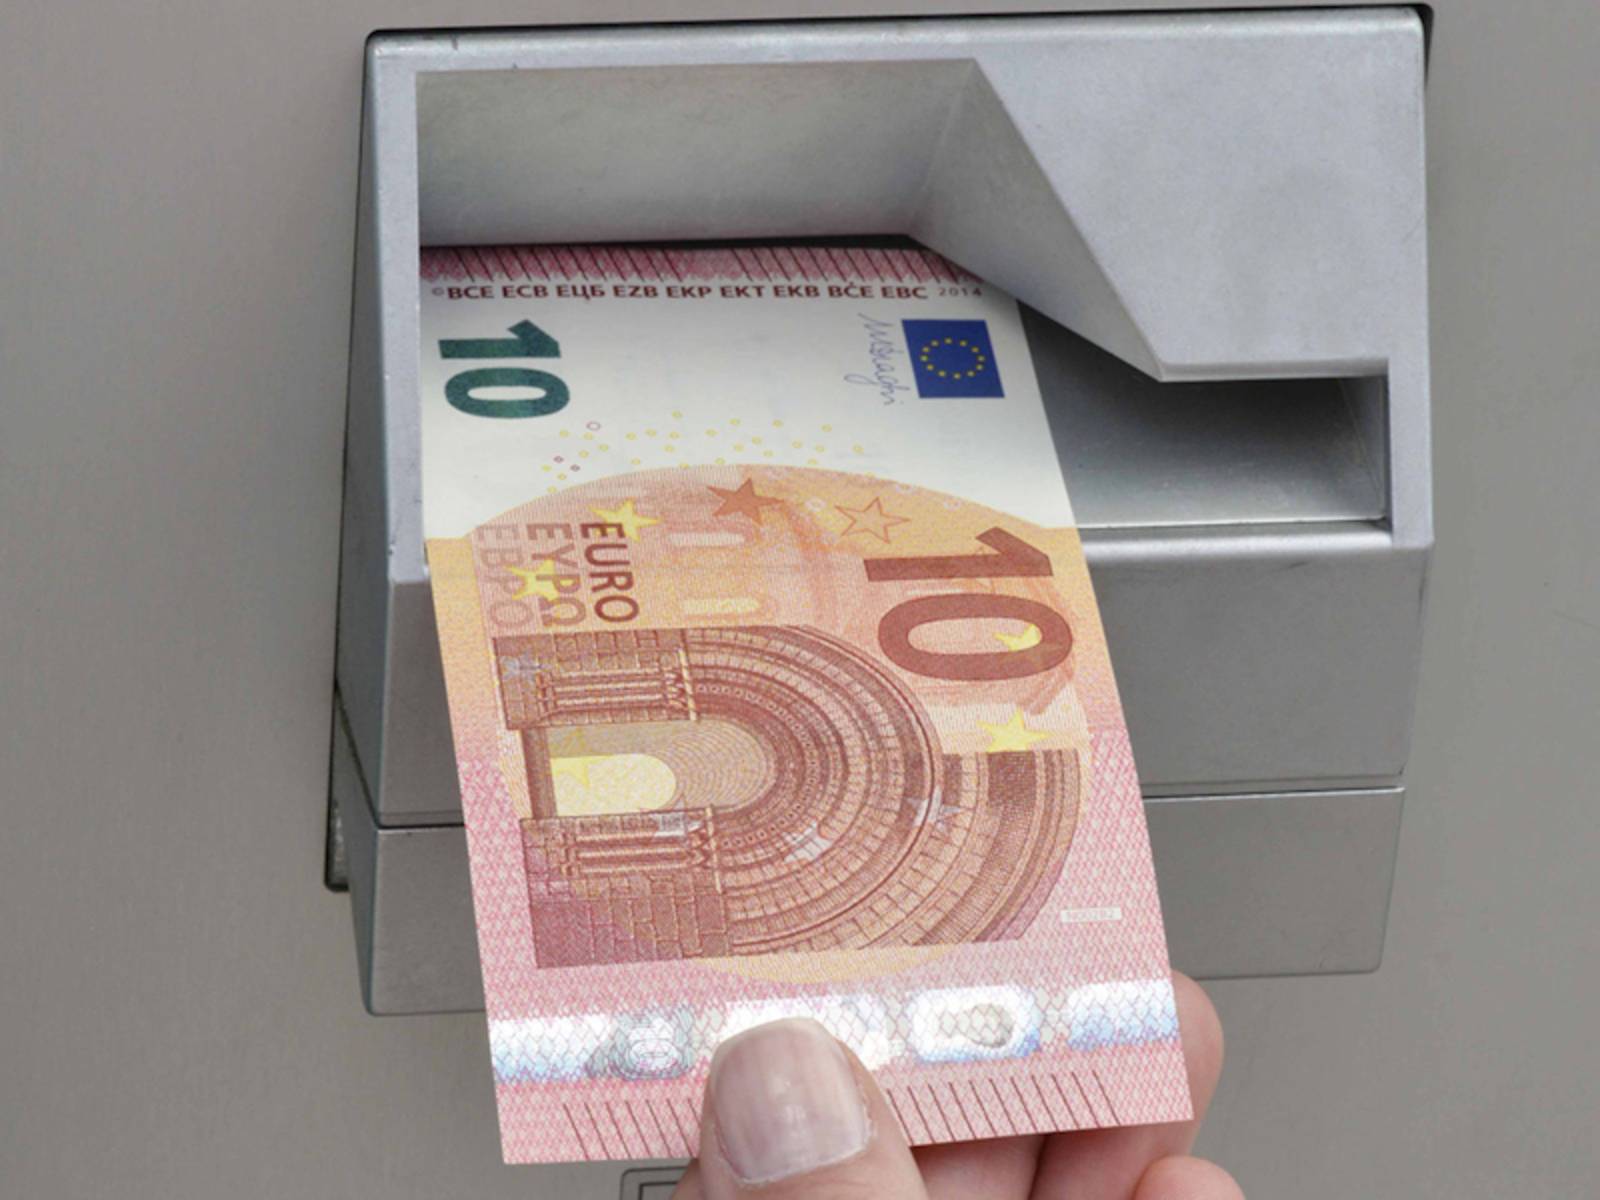 10-Euro-Schein an Automaten